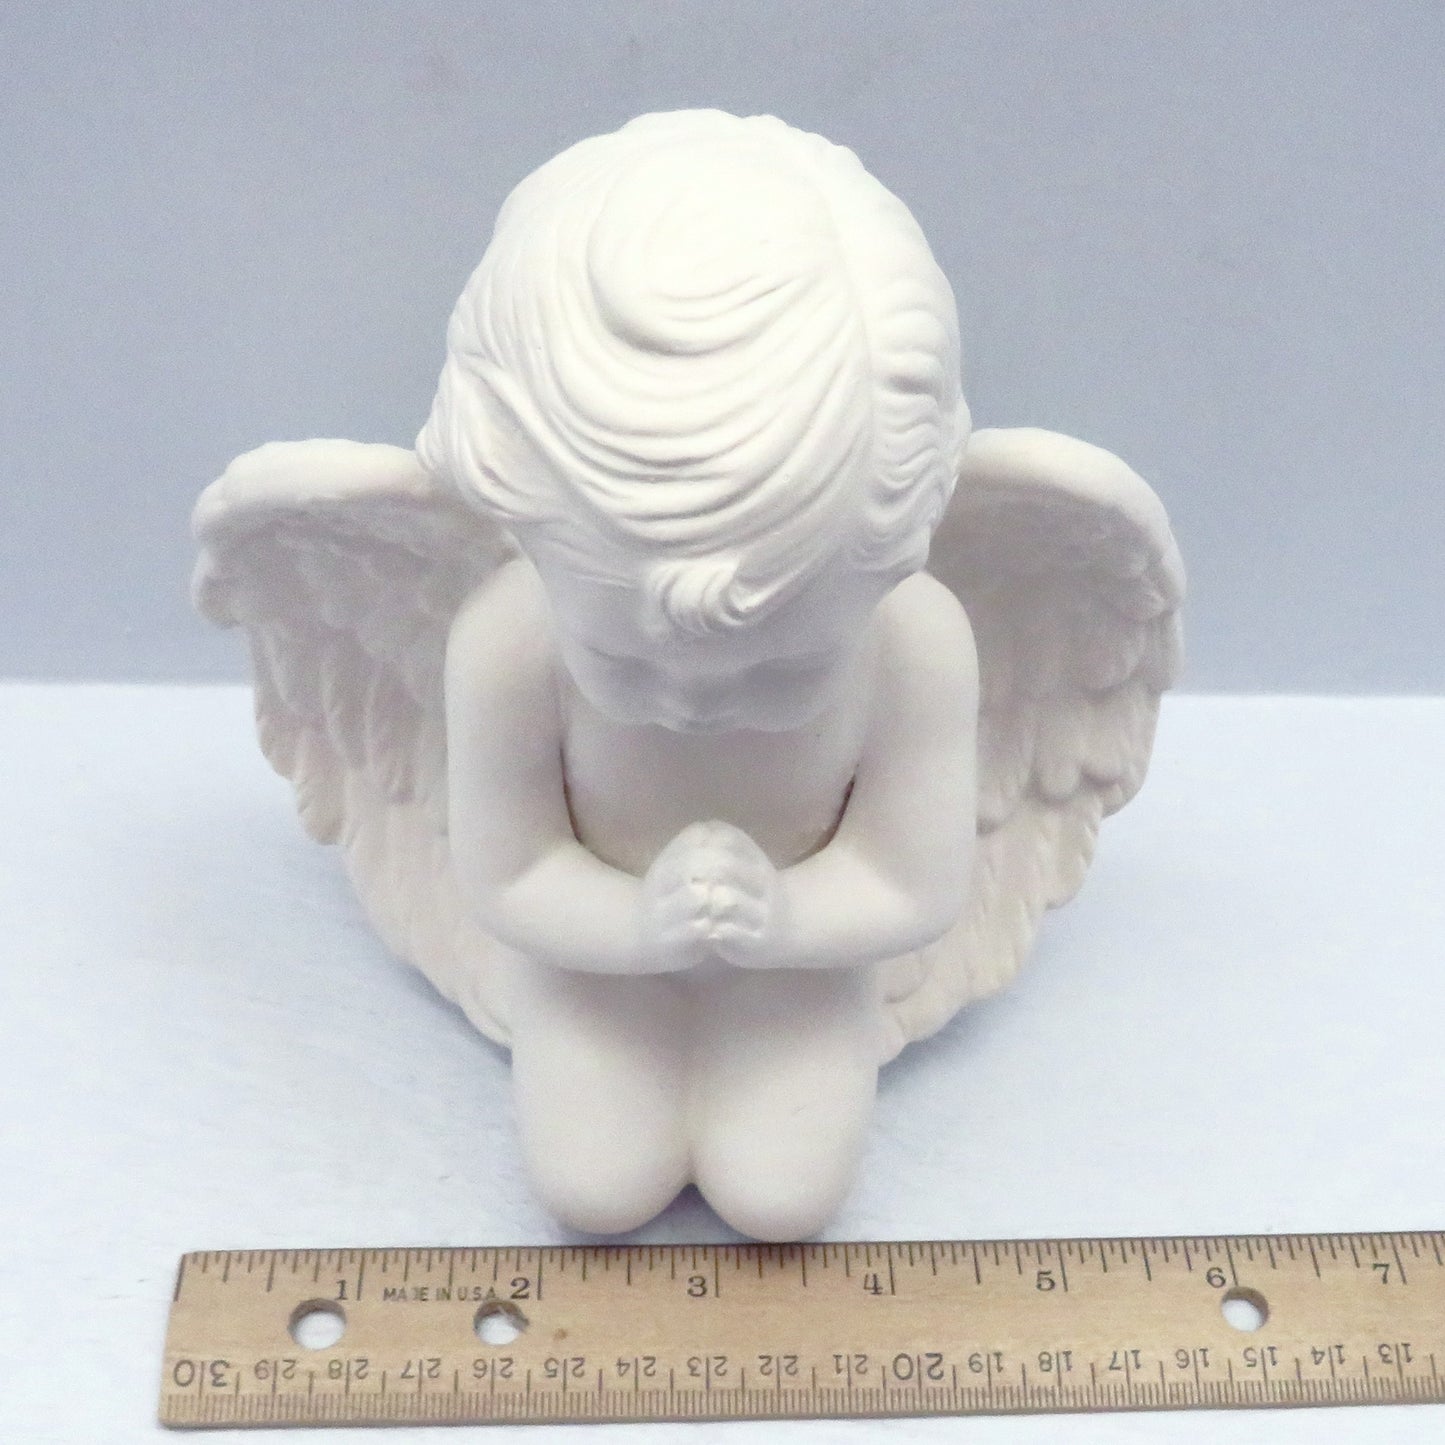 Large Handmade Praying Ceramic Ready to Paint Praying Cherub Kneeling, Ceramics to Paint, Paintable Ceramic Angel Figurine, Angel Decor, Cherub Gift